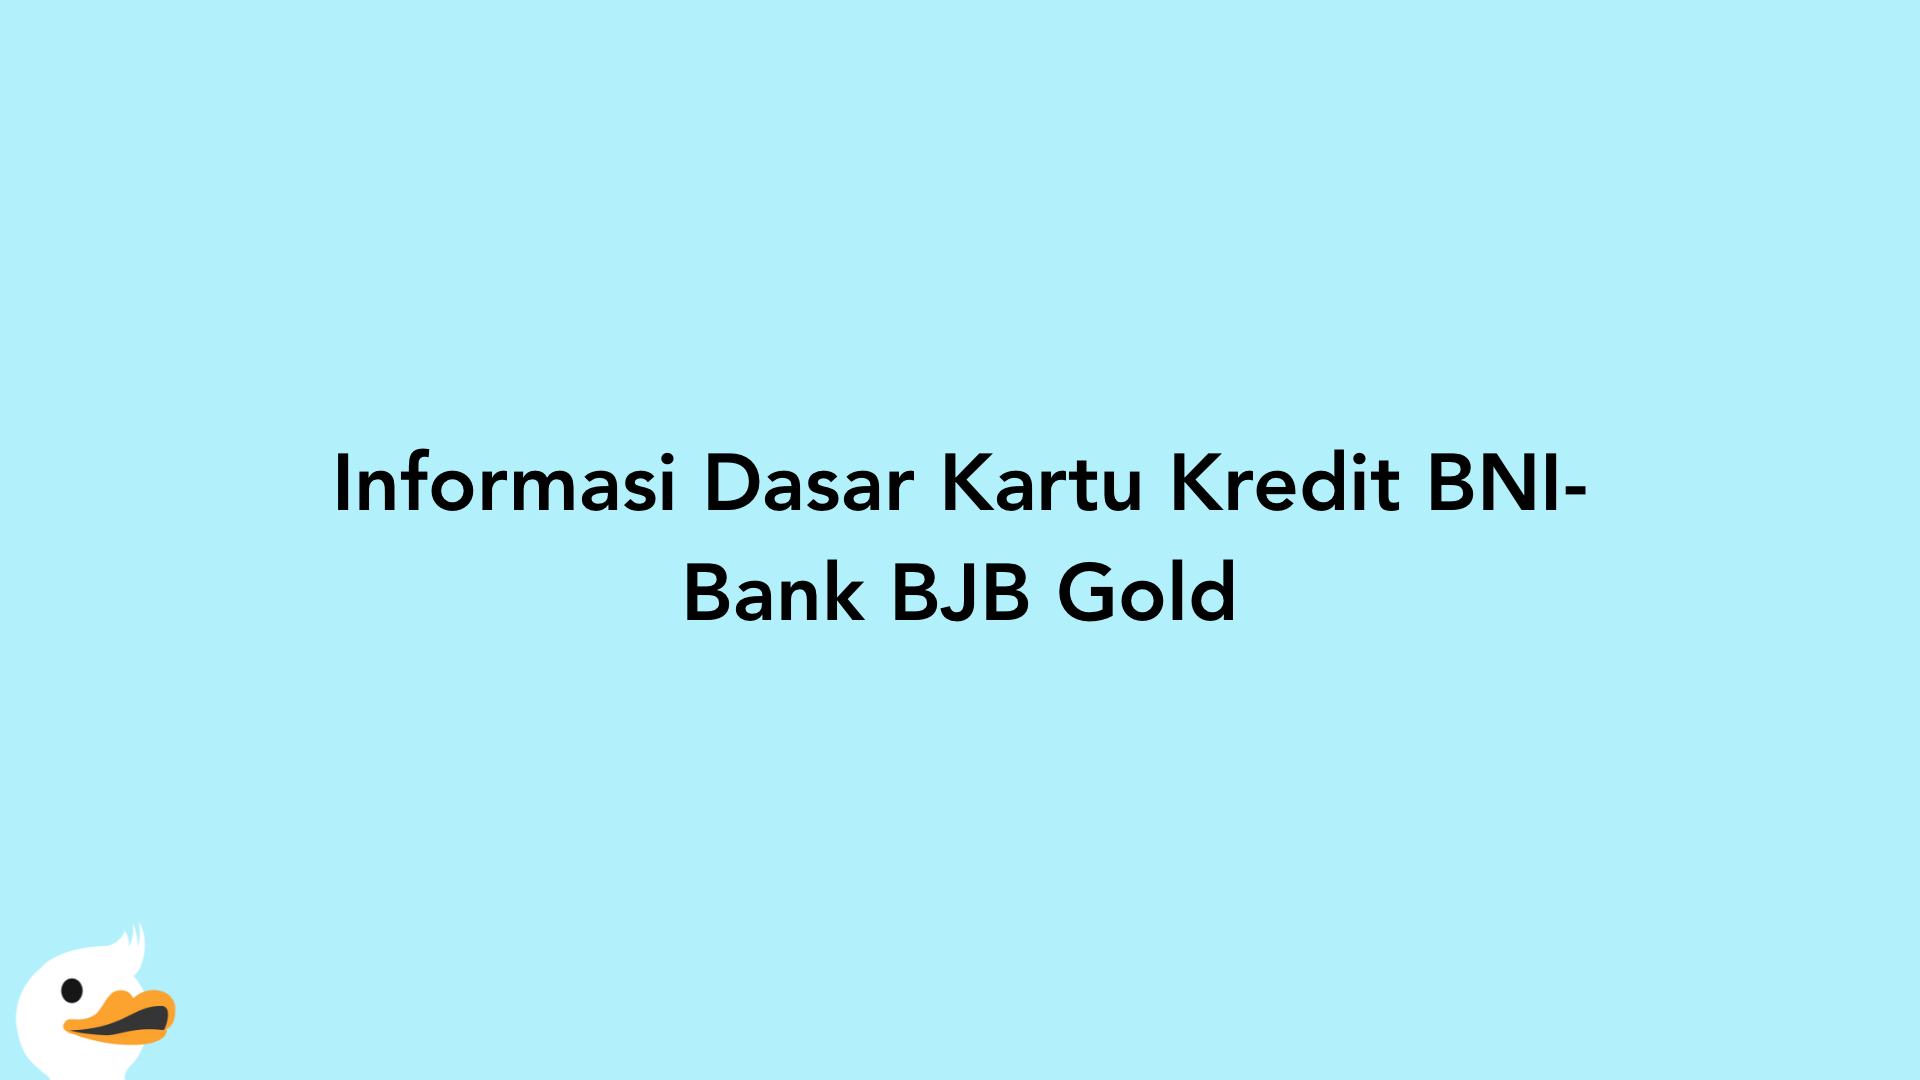 Informasi Dasar Kartu Kredit BNI-Bank BJB Gold